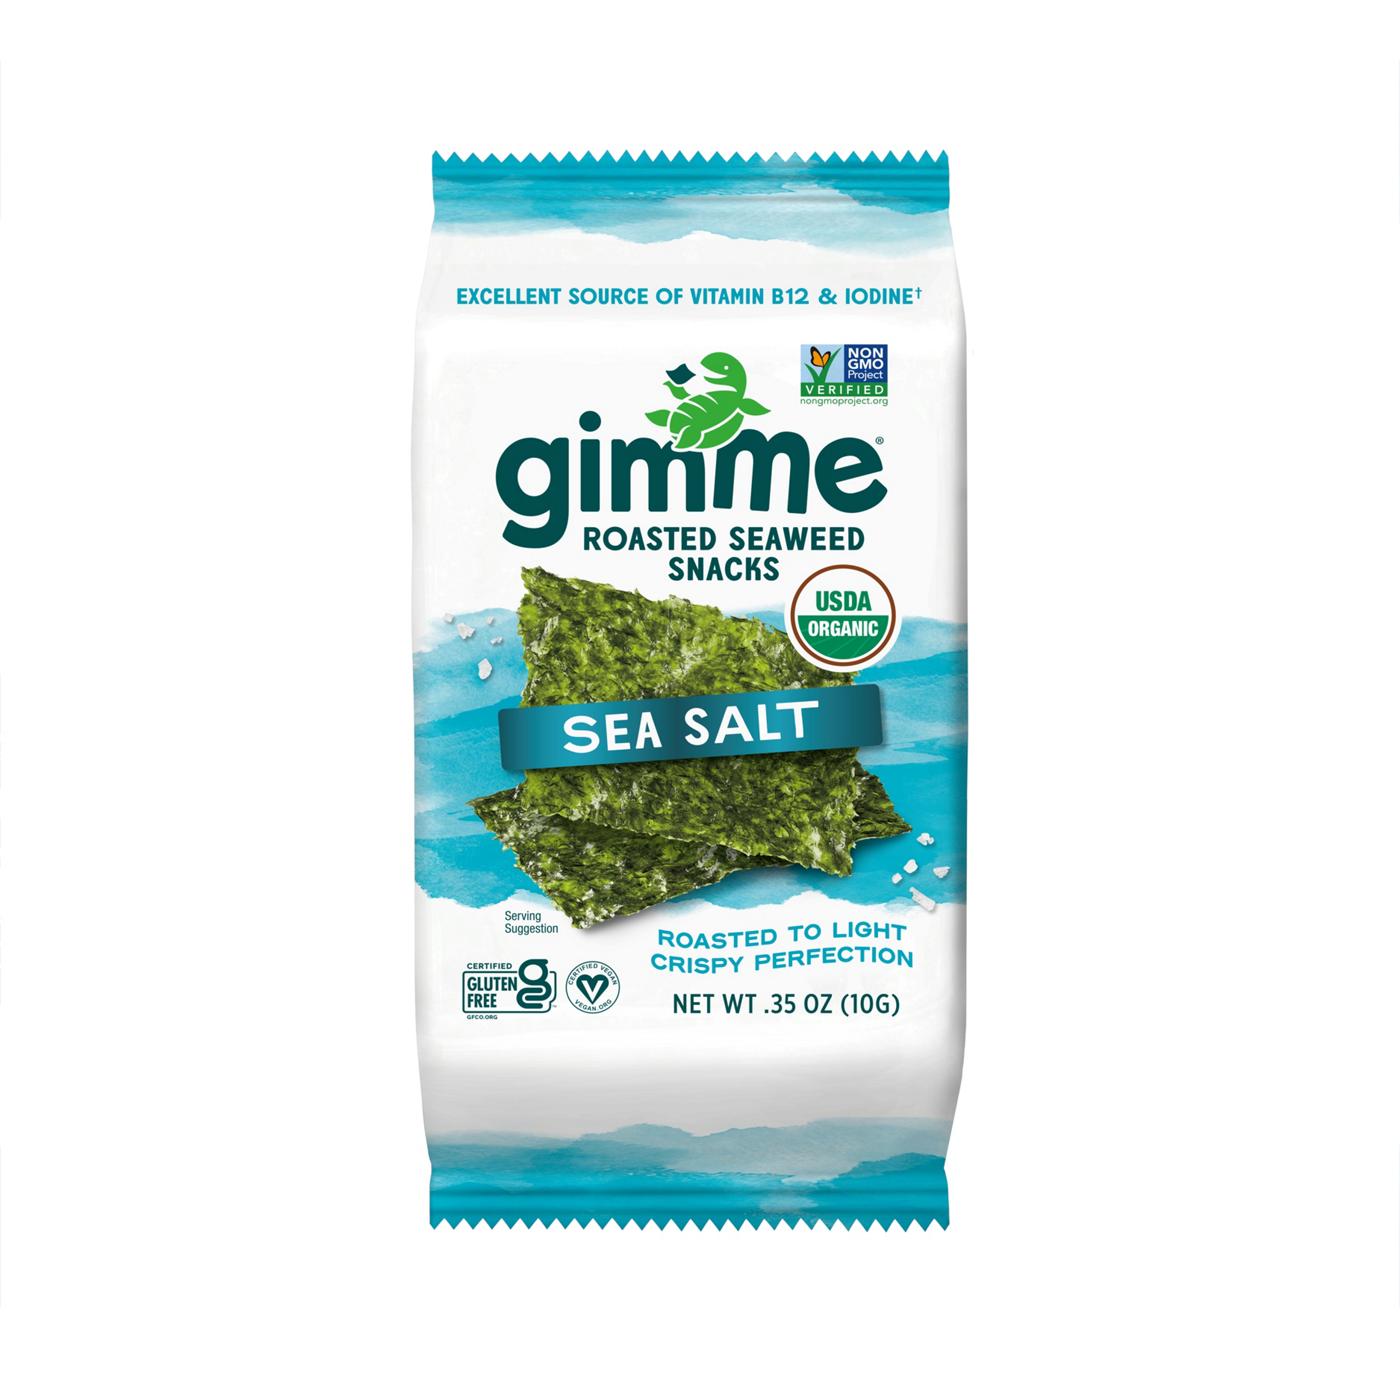 gimme Roasted Seaweed Snack - Sea Salt; image 1 of 8